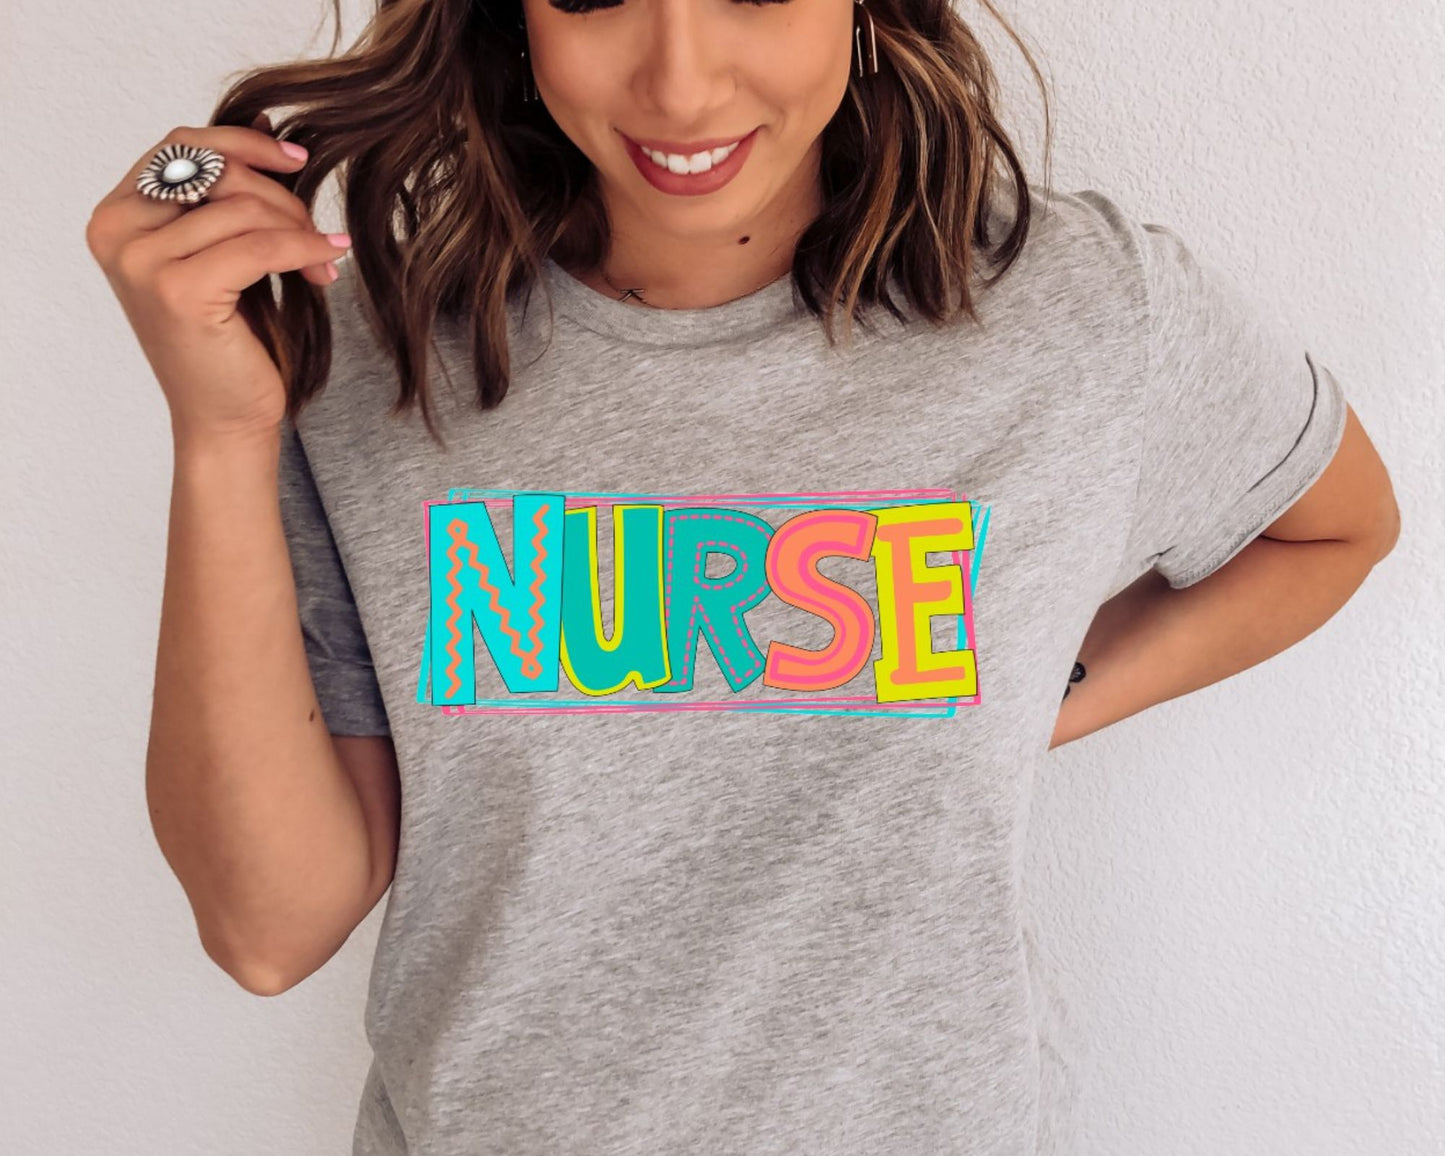 Nurse Moodle t-shirt